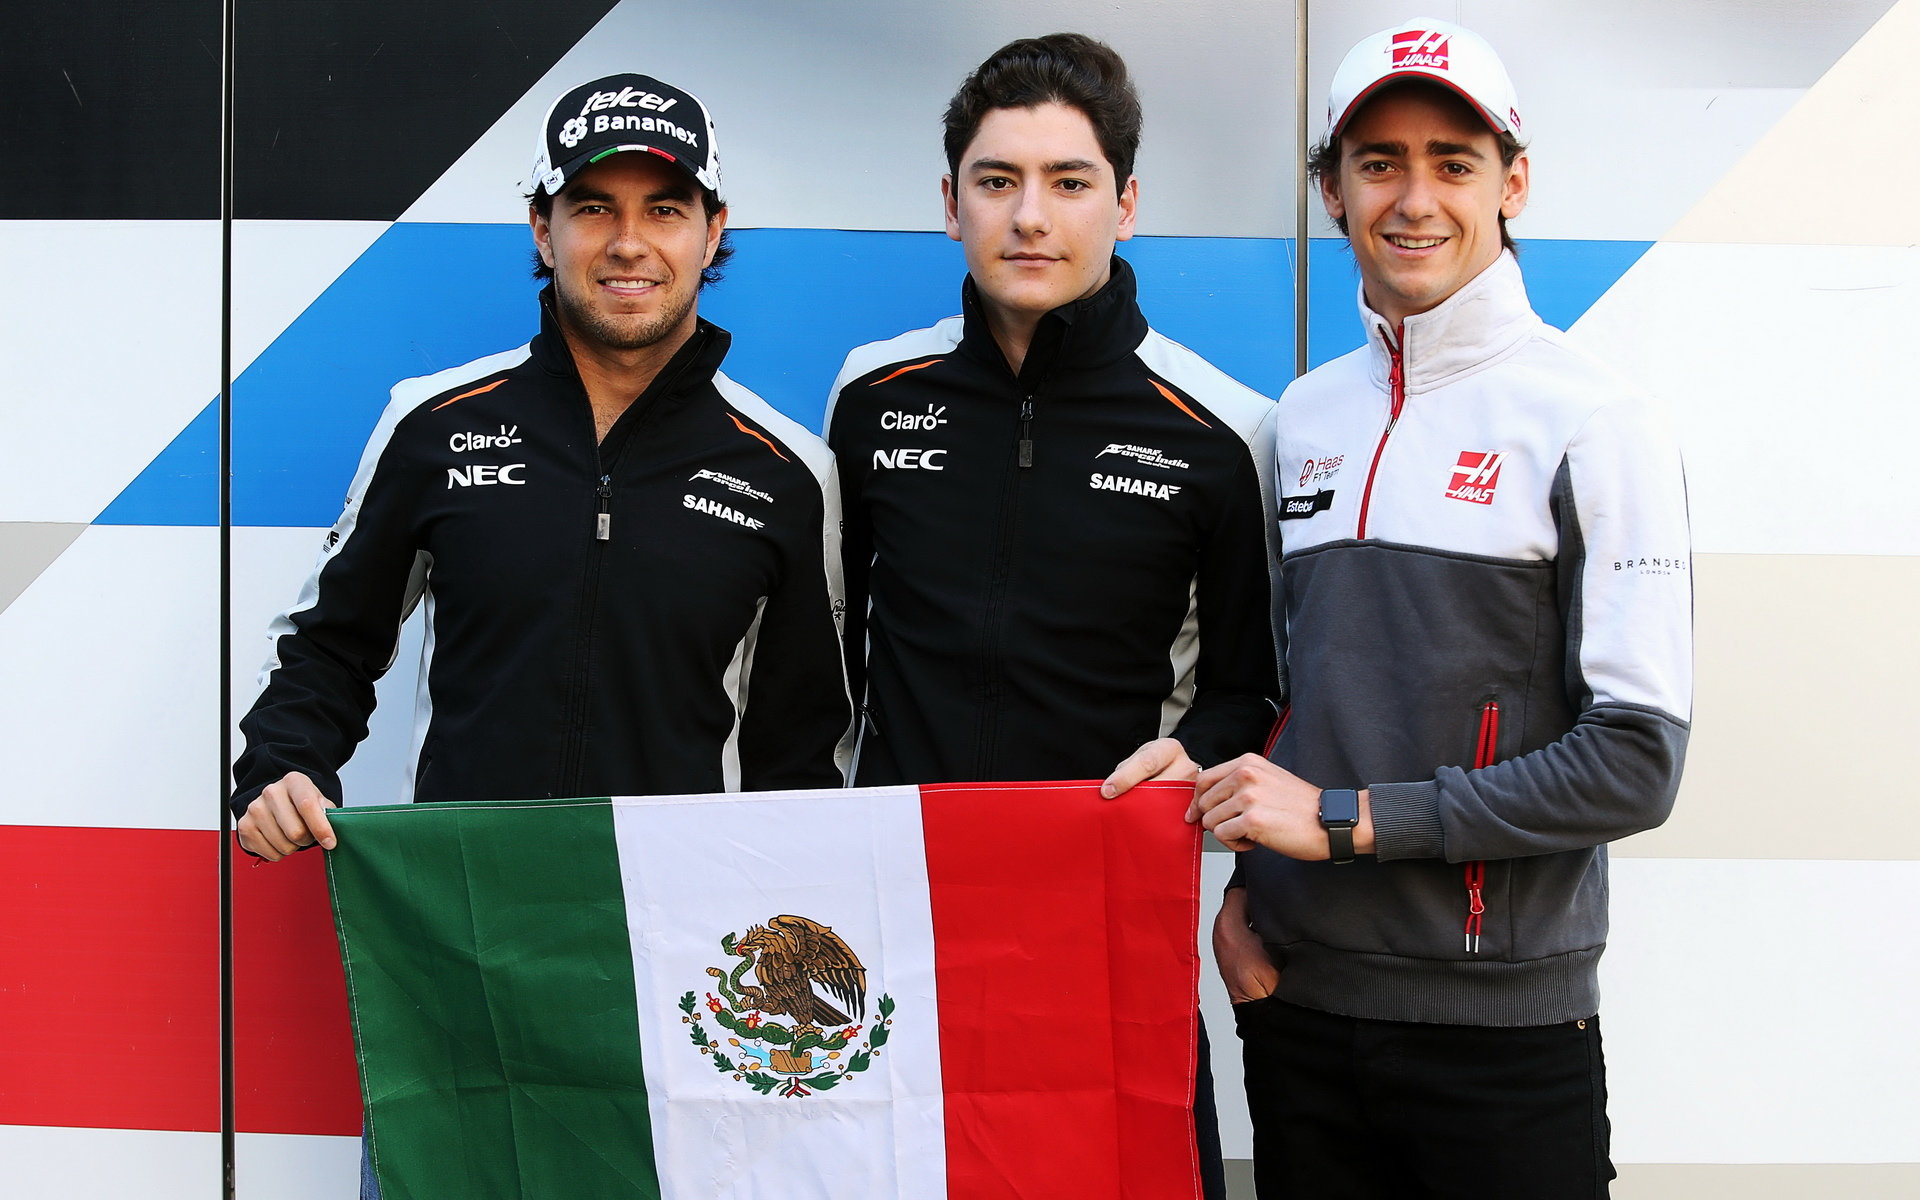 V závodě se představí dva domácí jezdci: Sergio Pérez a Esteban Gutiérrez, v tréninku zřejmě dostane šanci také Alfonso Celis